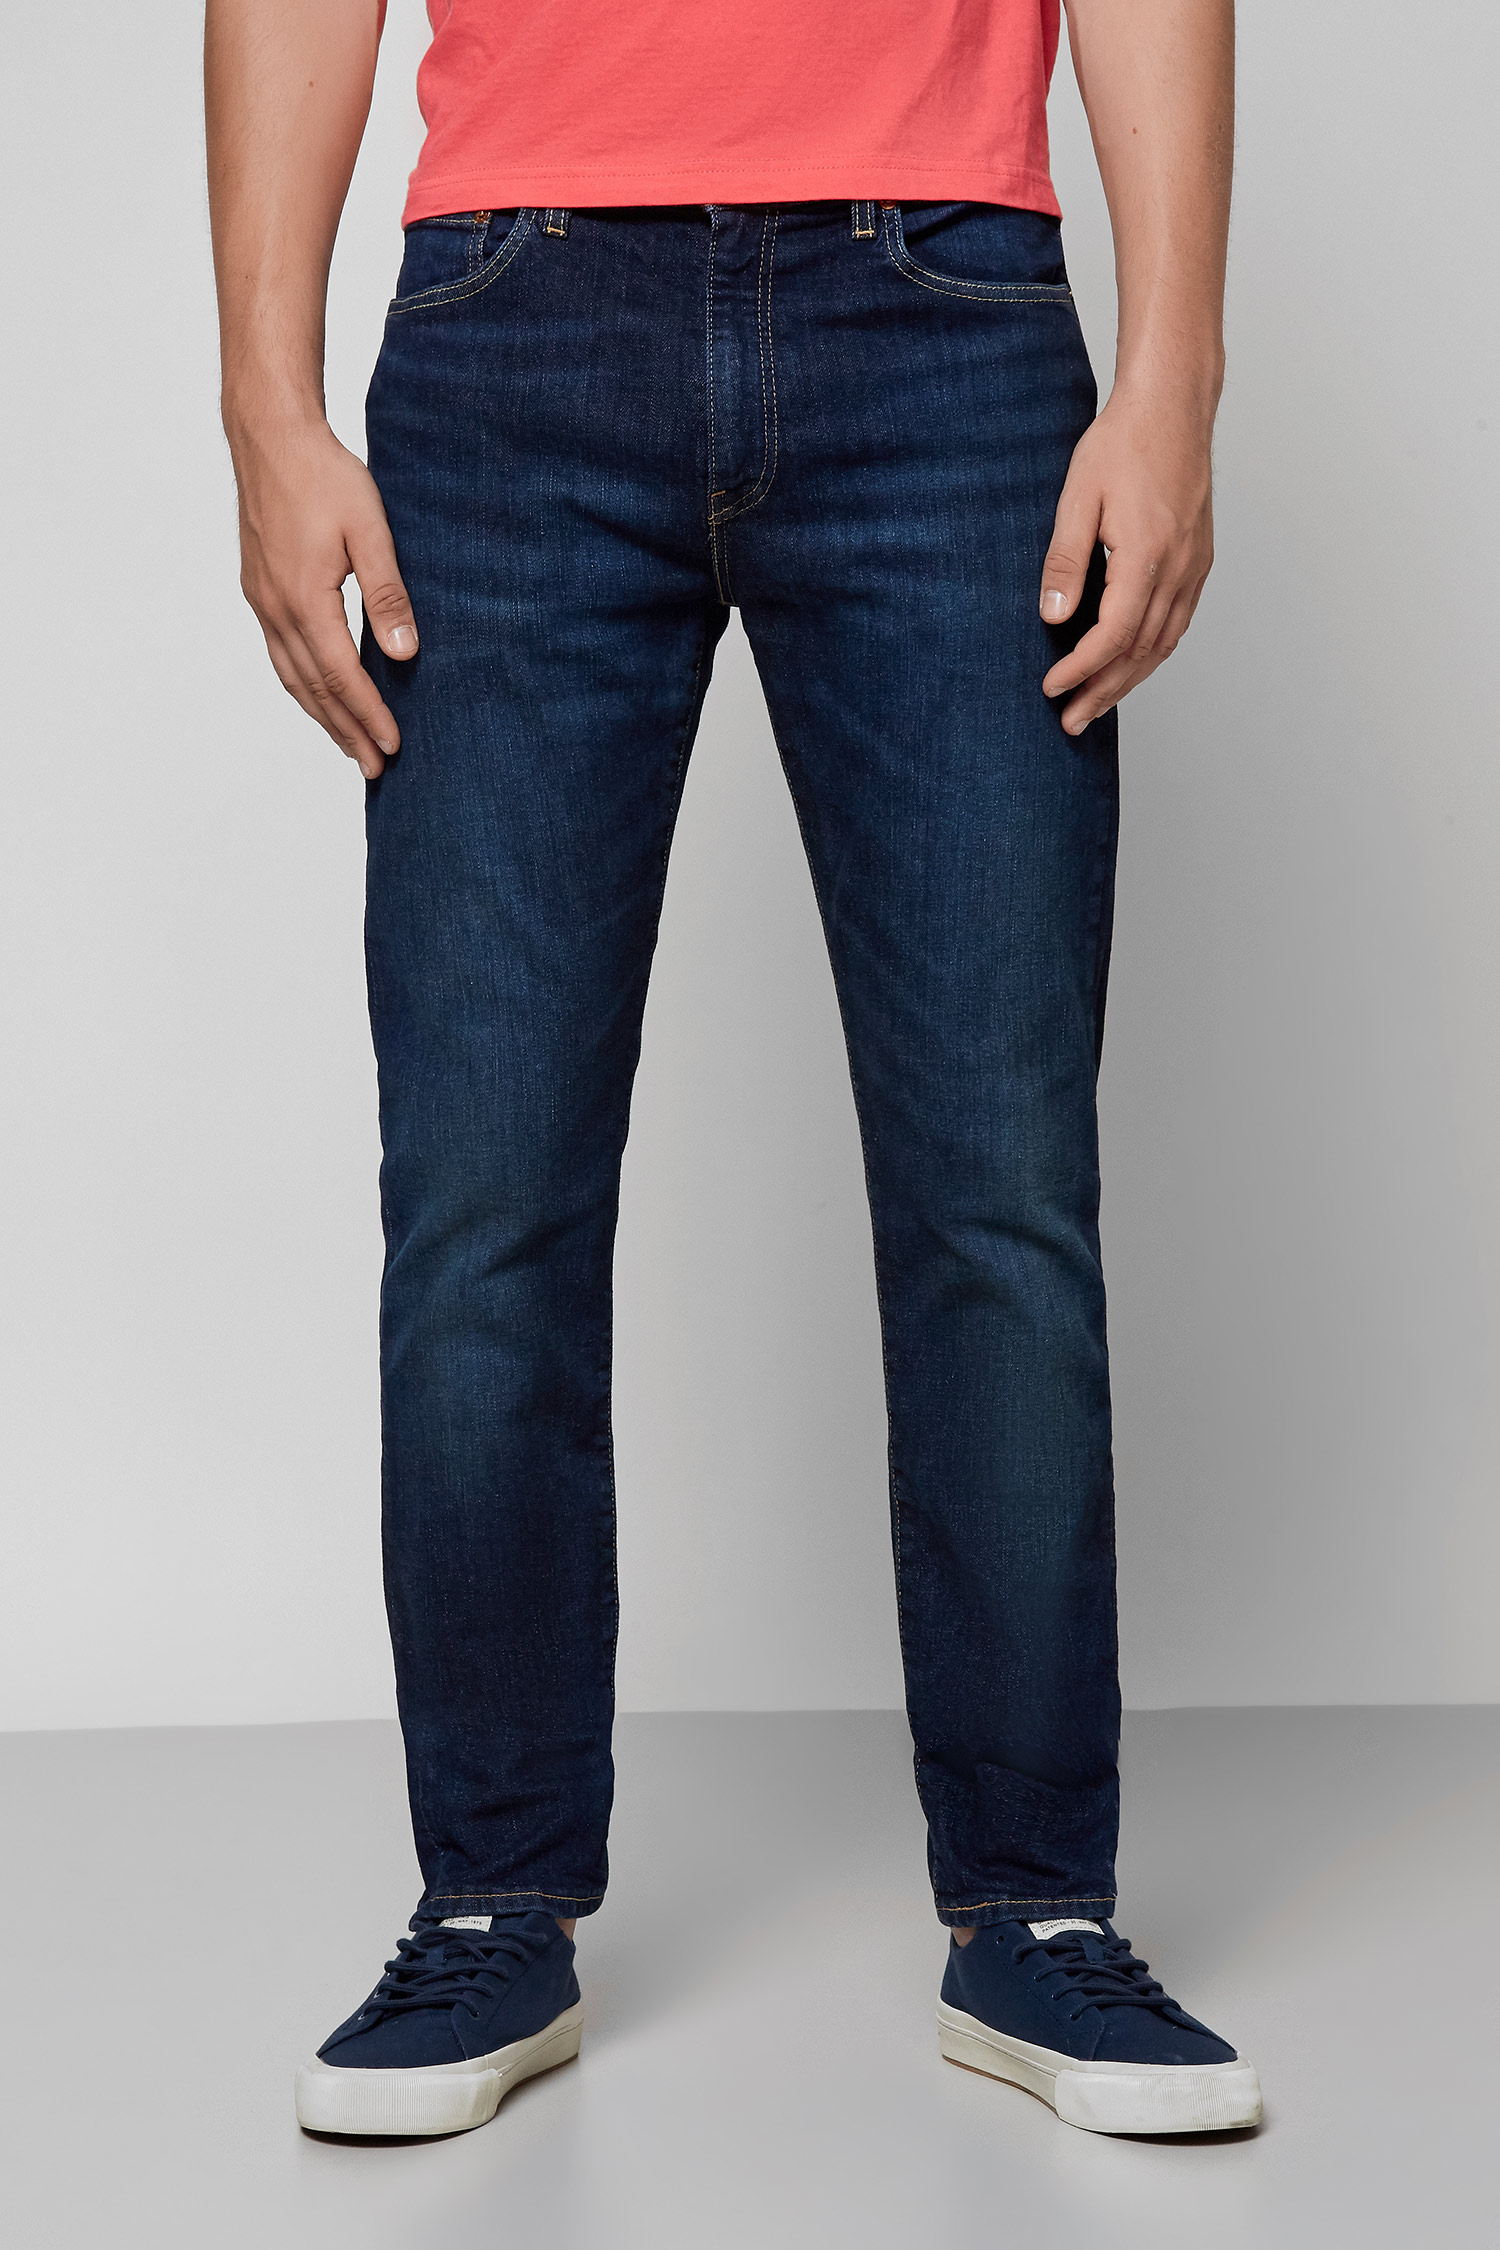 Темно-сині джинси 512™ Slim Taper для хлопців Levi’s® 28833;0633